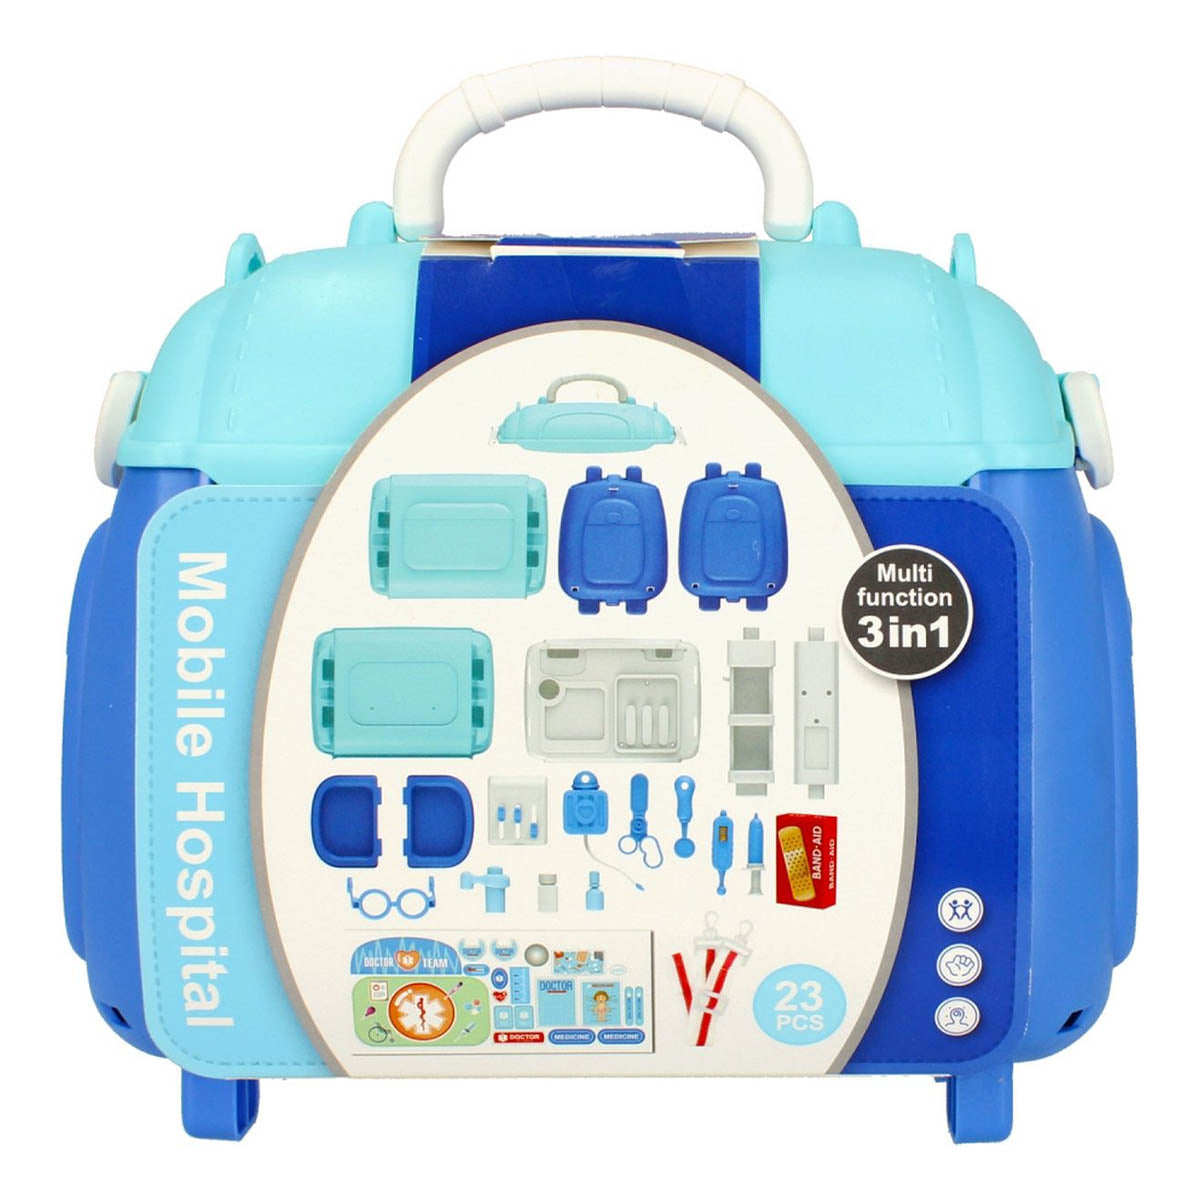 Ariko Spielzeugkoffer Doctor 23 Teile - Blutdruckmessgerät, Schere, Medikamente, Untersuchungsutensilien und vieles mehr - praktischer Tragekoffer